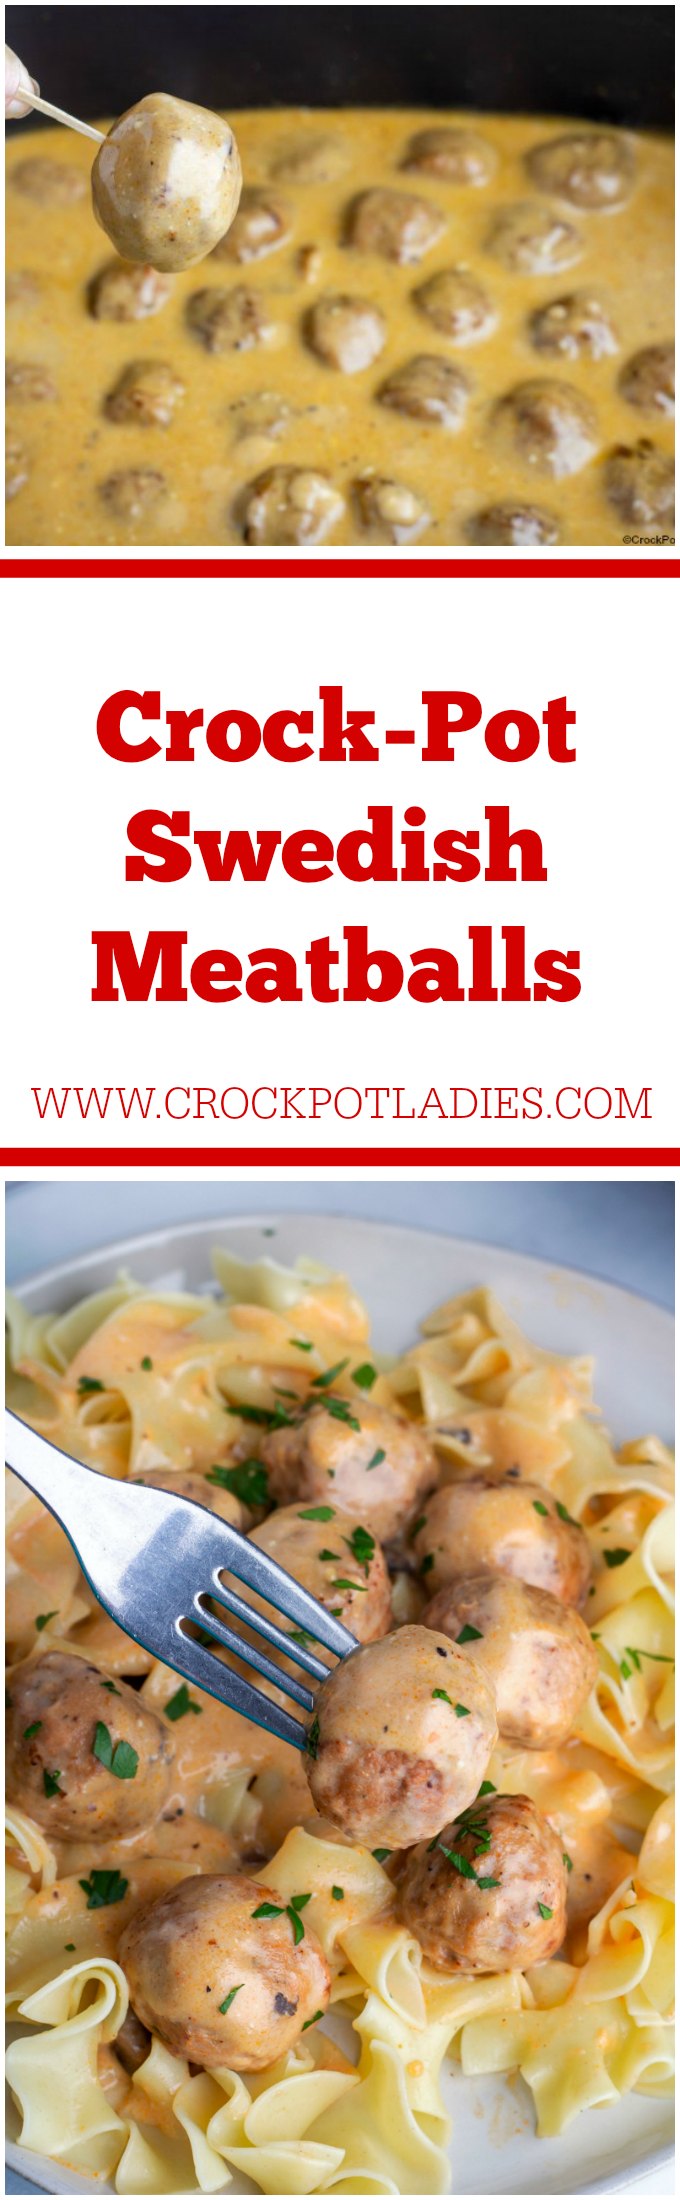 Crock-Pot Swedish Meatballs